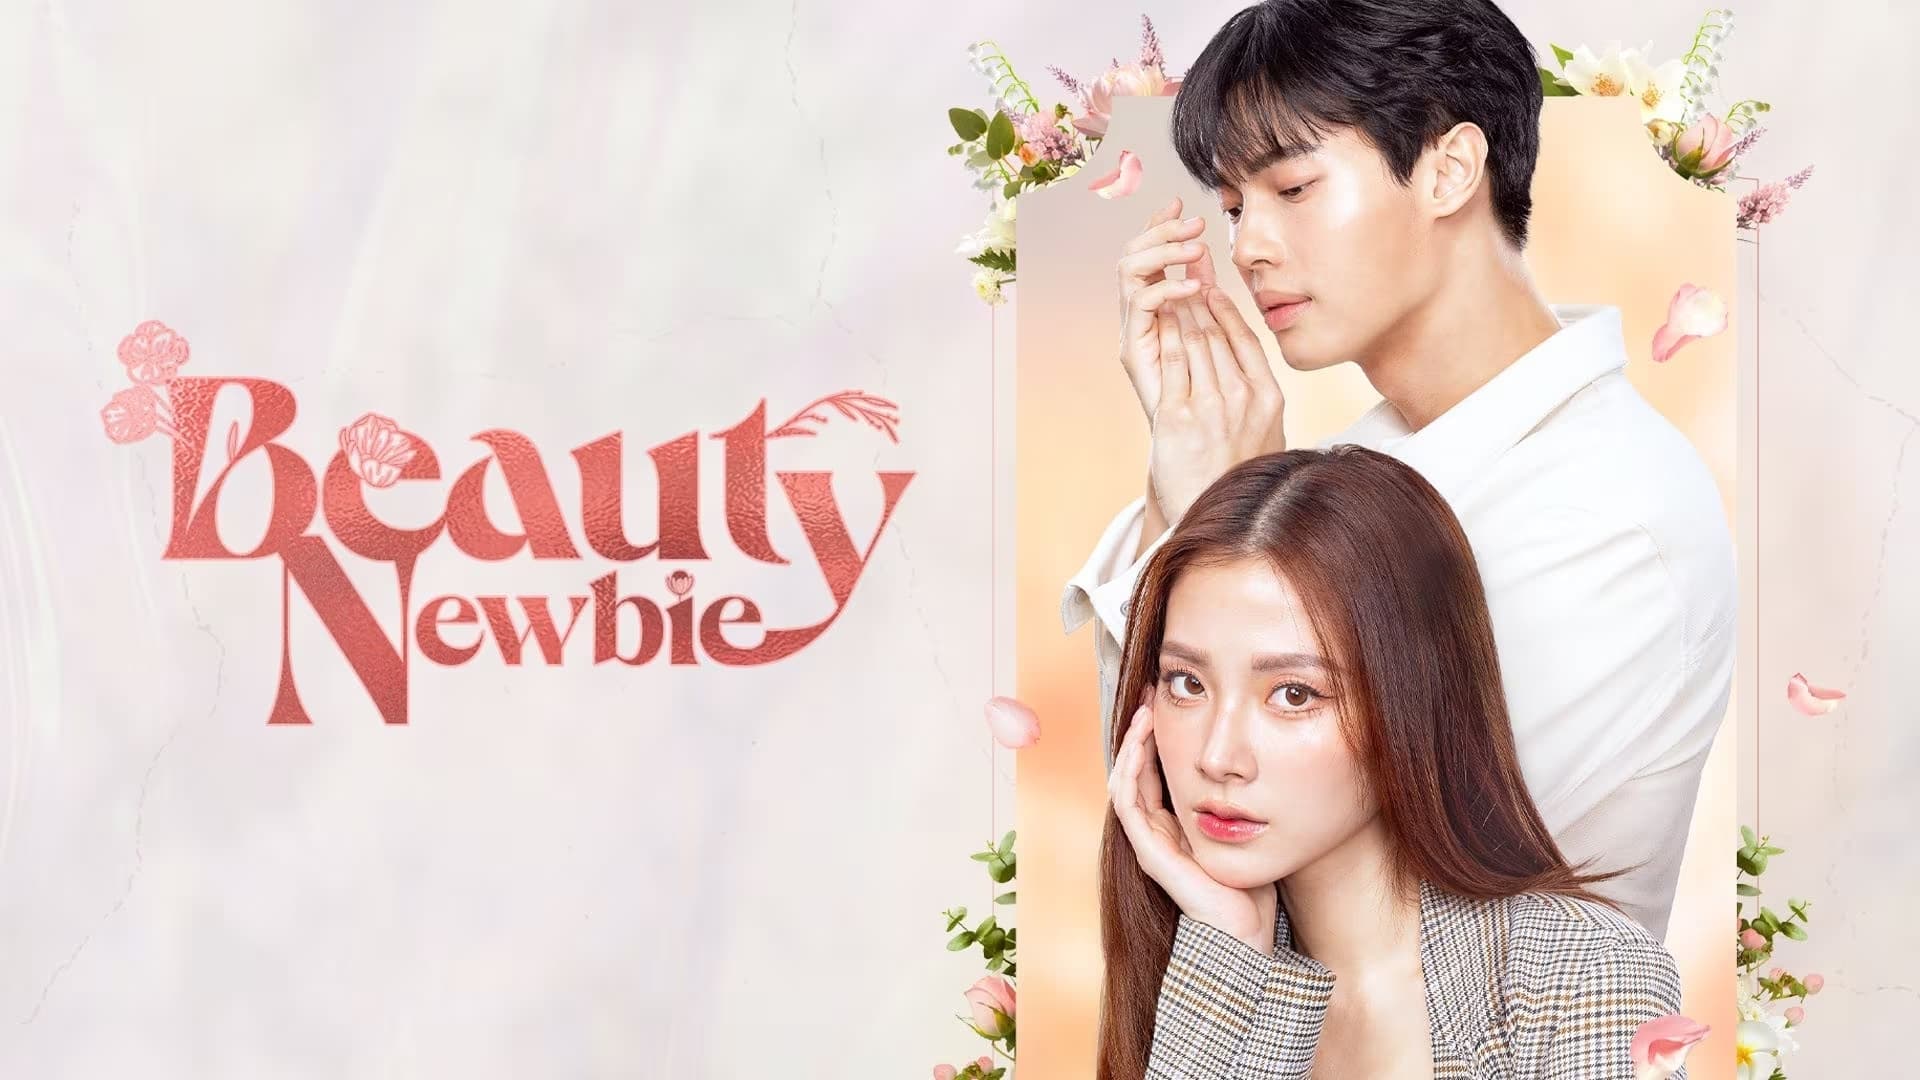 Beauty Newbie: Season 1 Episode 2